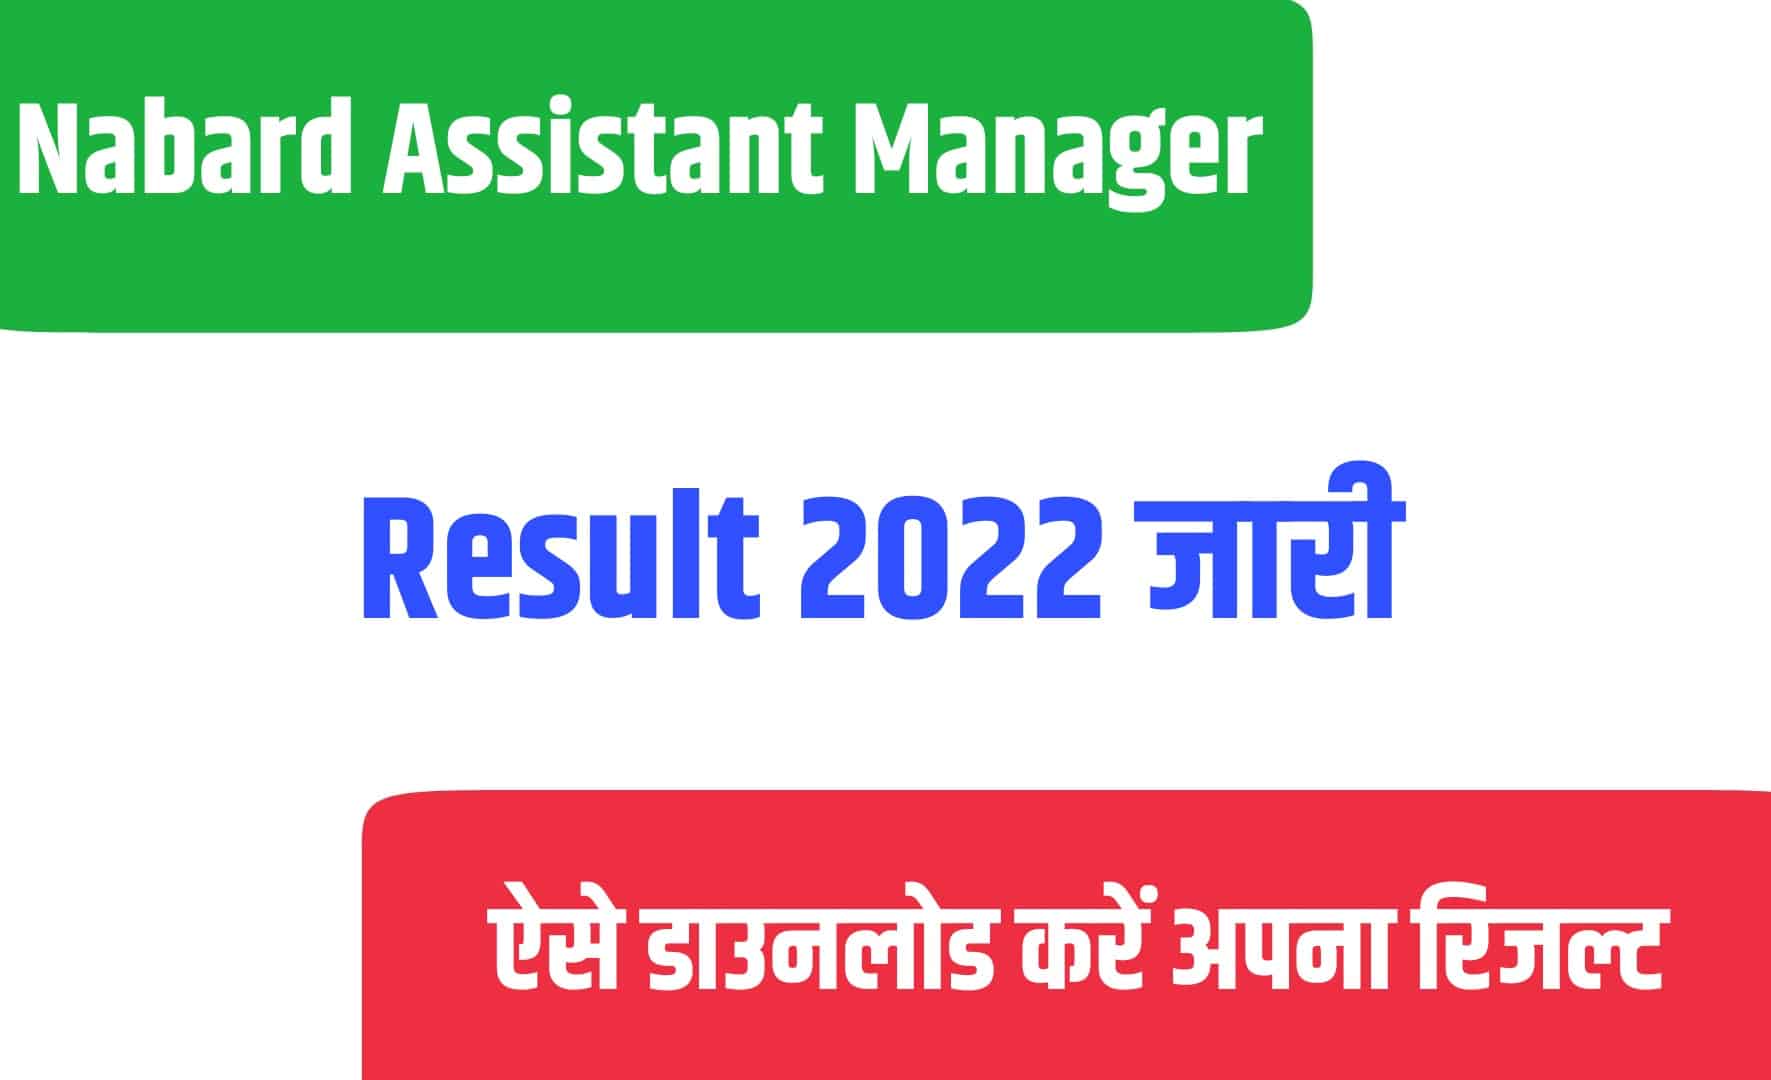 Nabard Assistant Manager Result 2022 | नाबार्ड असिस्टेंट मैनेजर रिजल्ट जारी